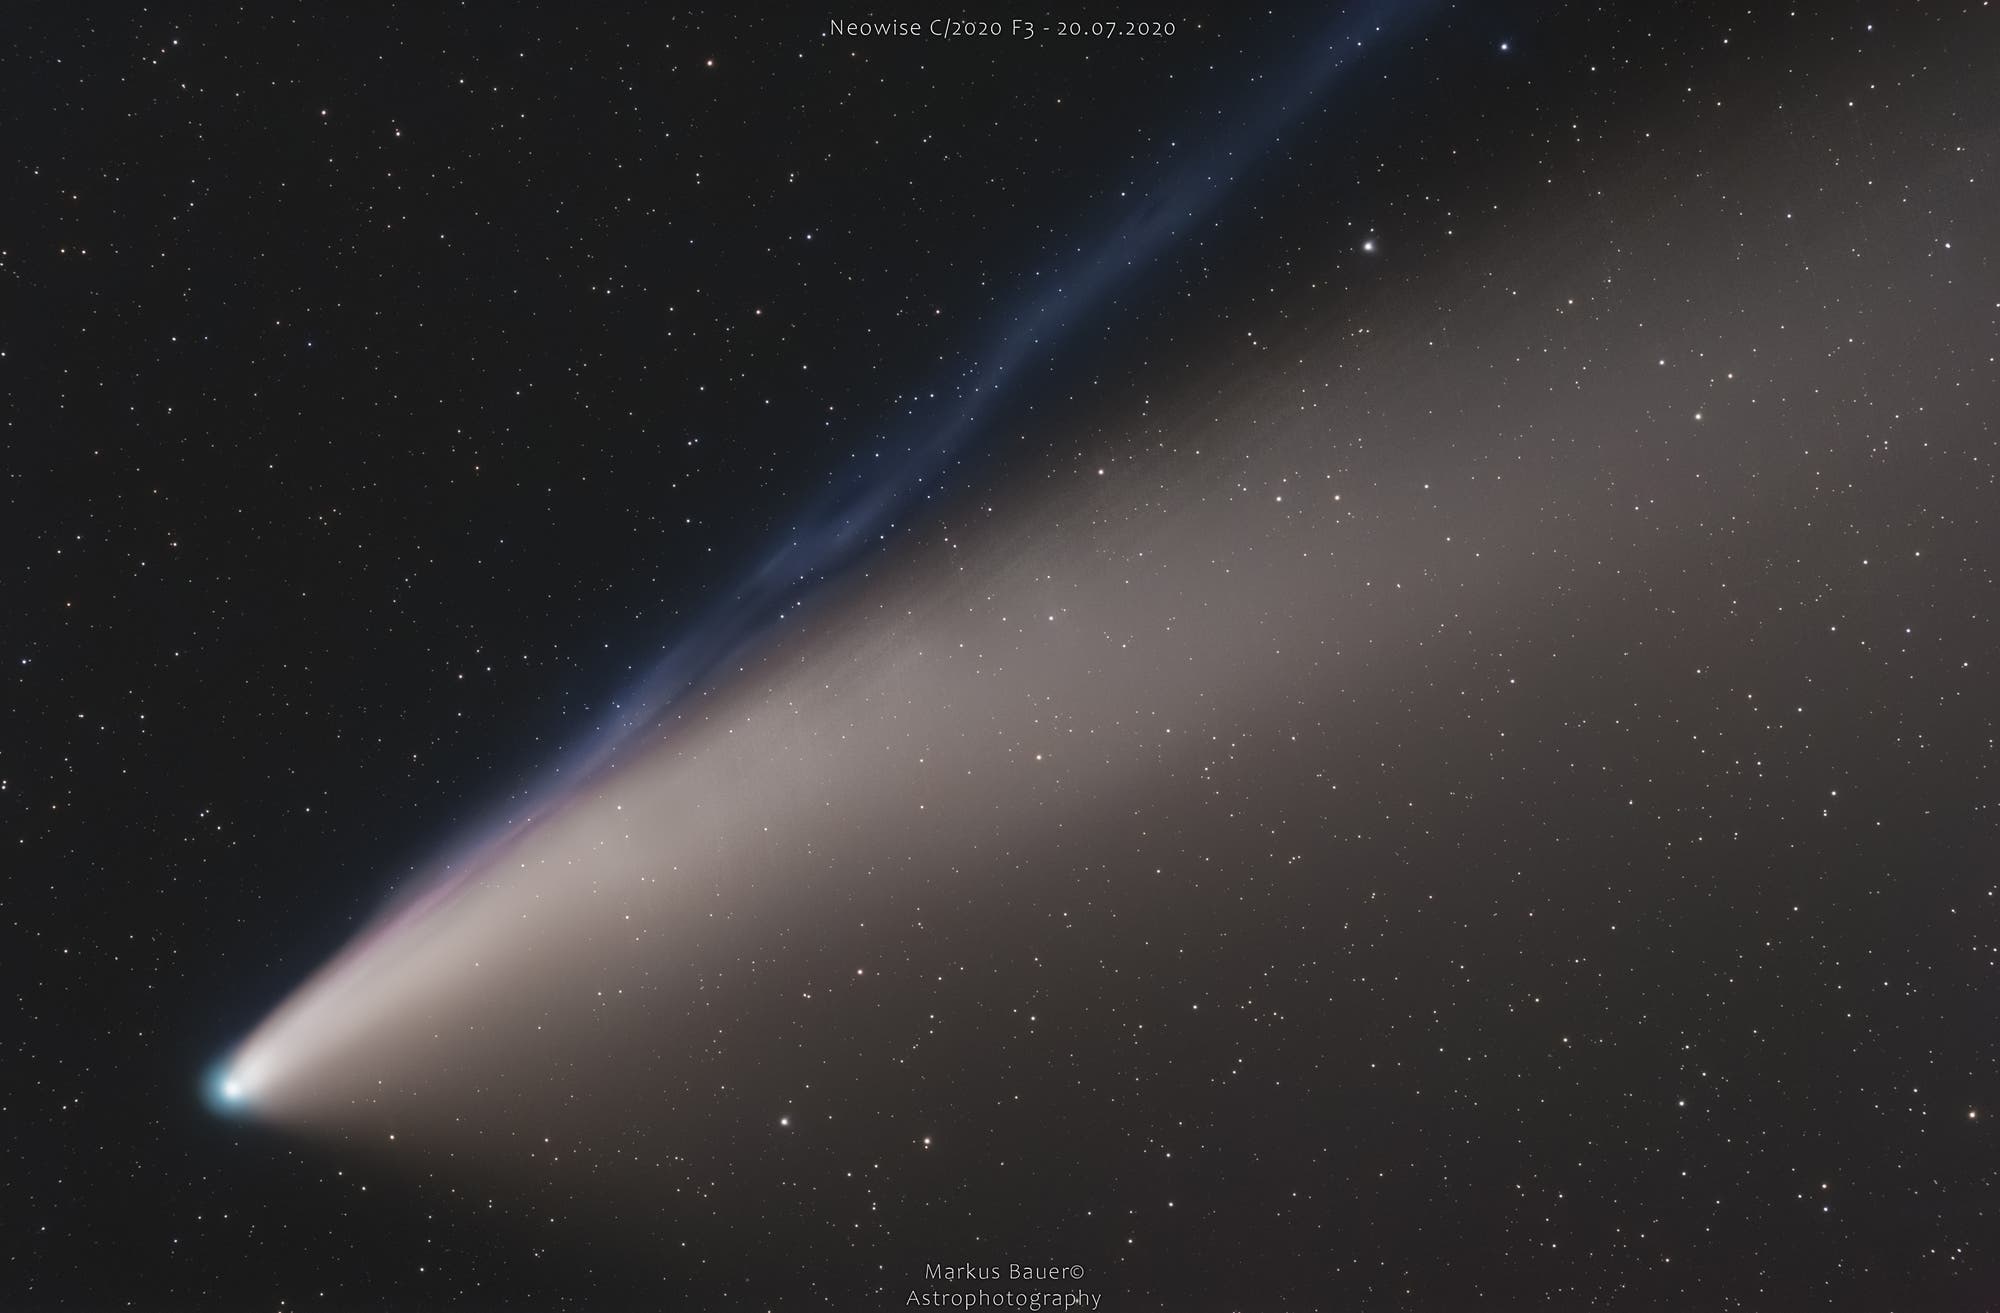 Komet Neowise - Closeup